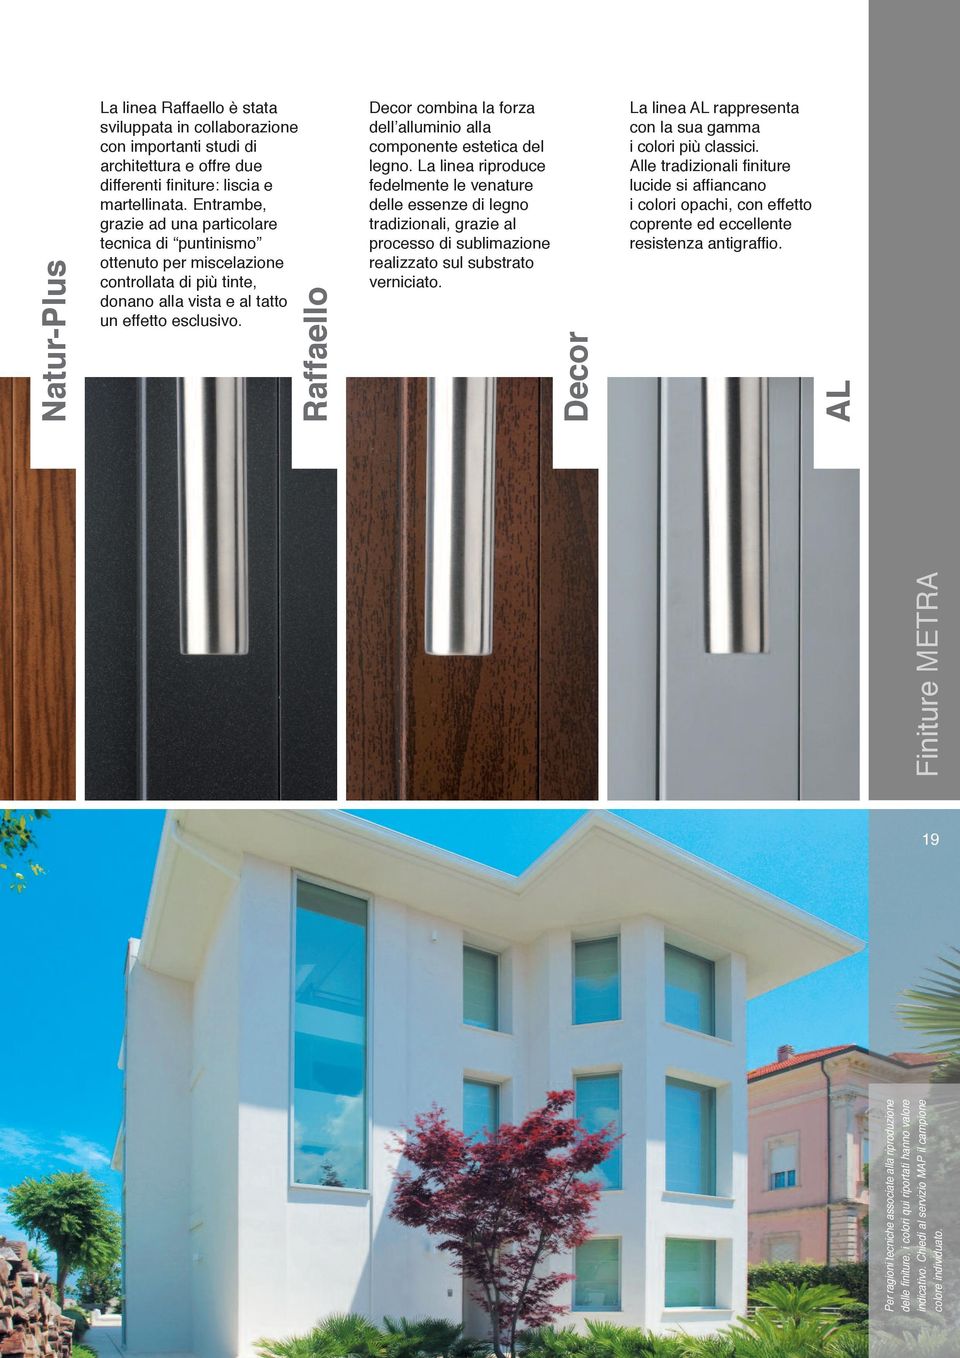 Raffaello Decor combina la forza dell alluminio alla componente estetica del legno.